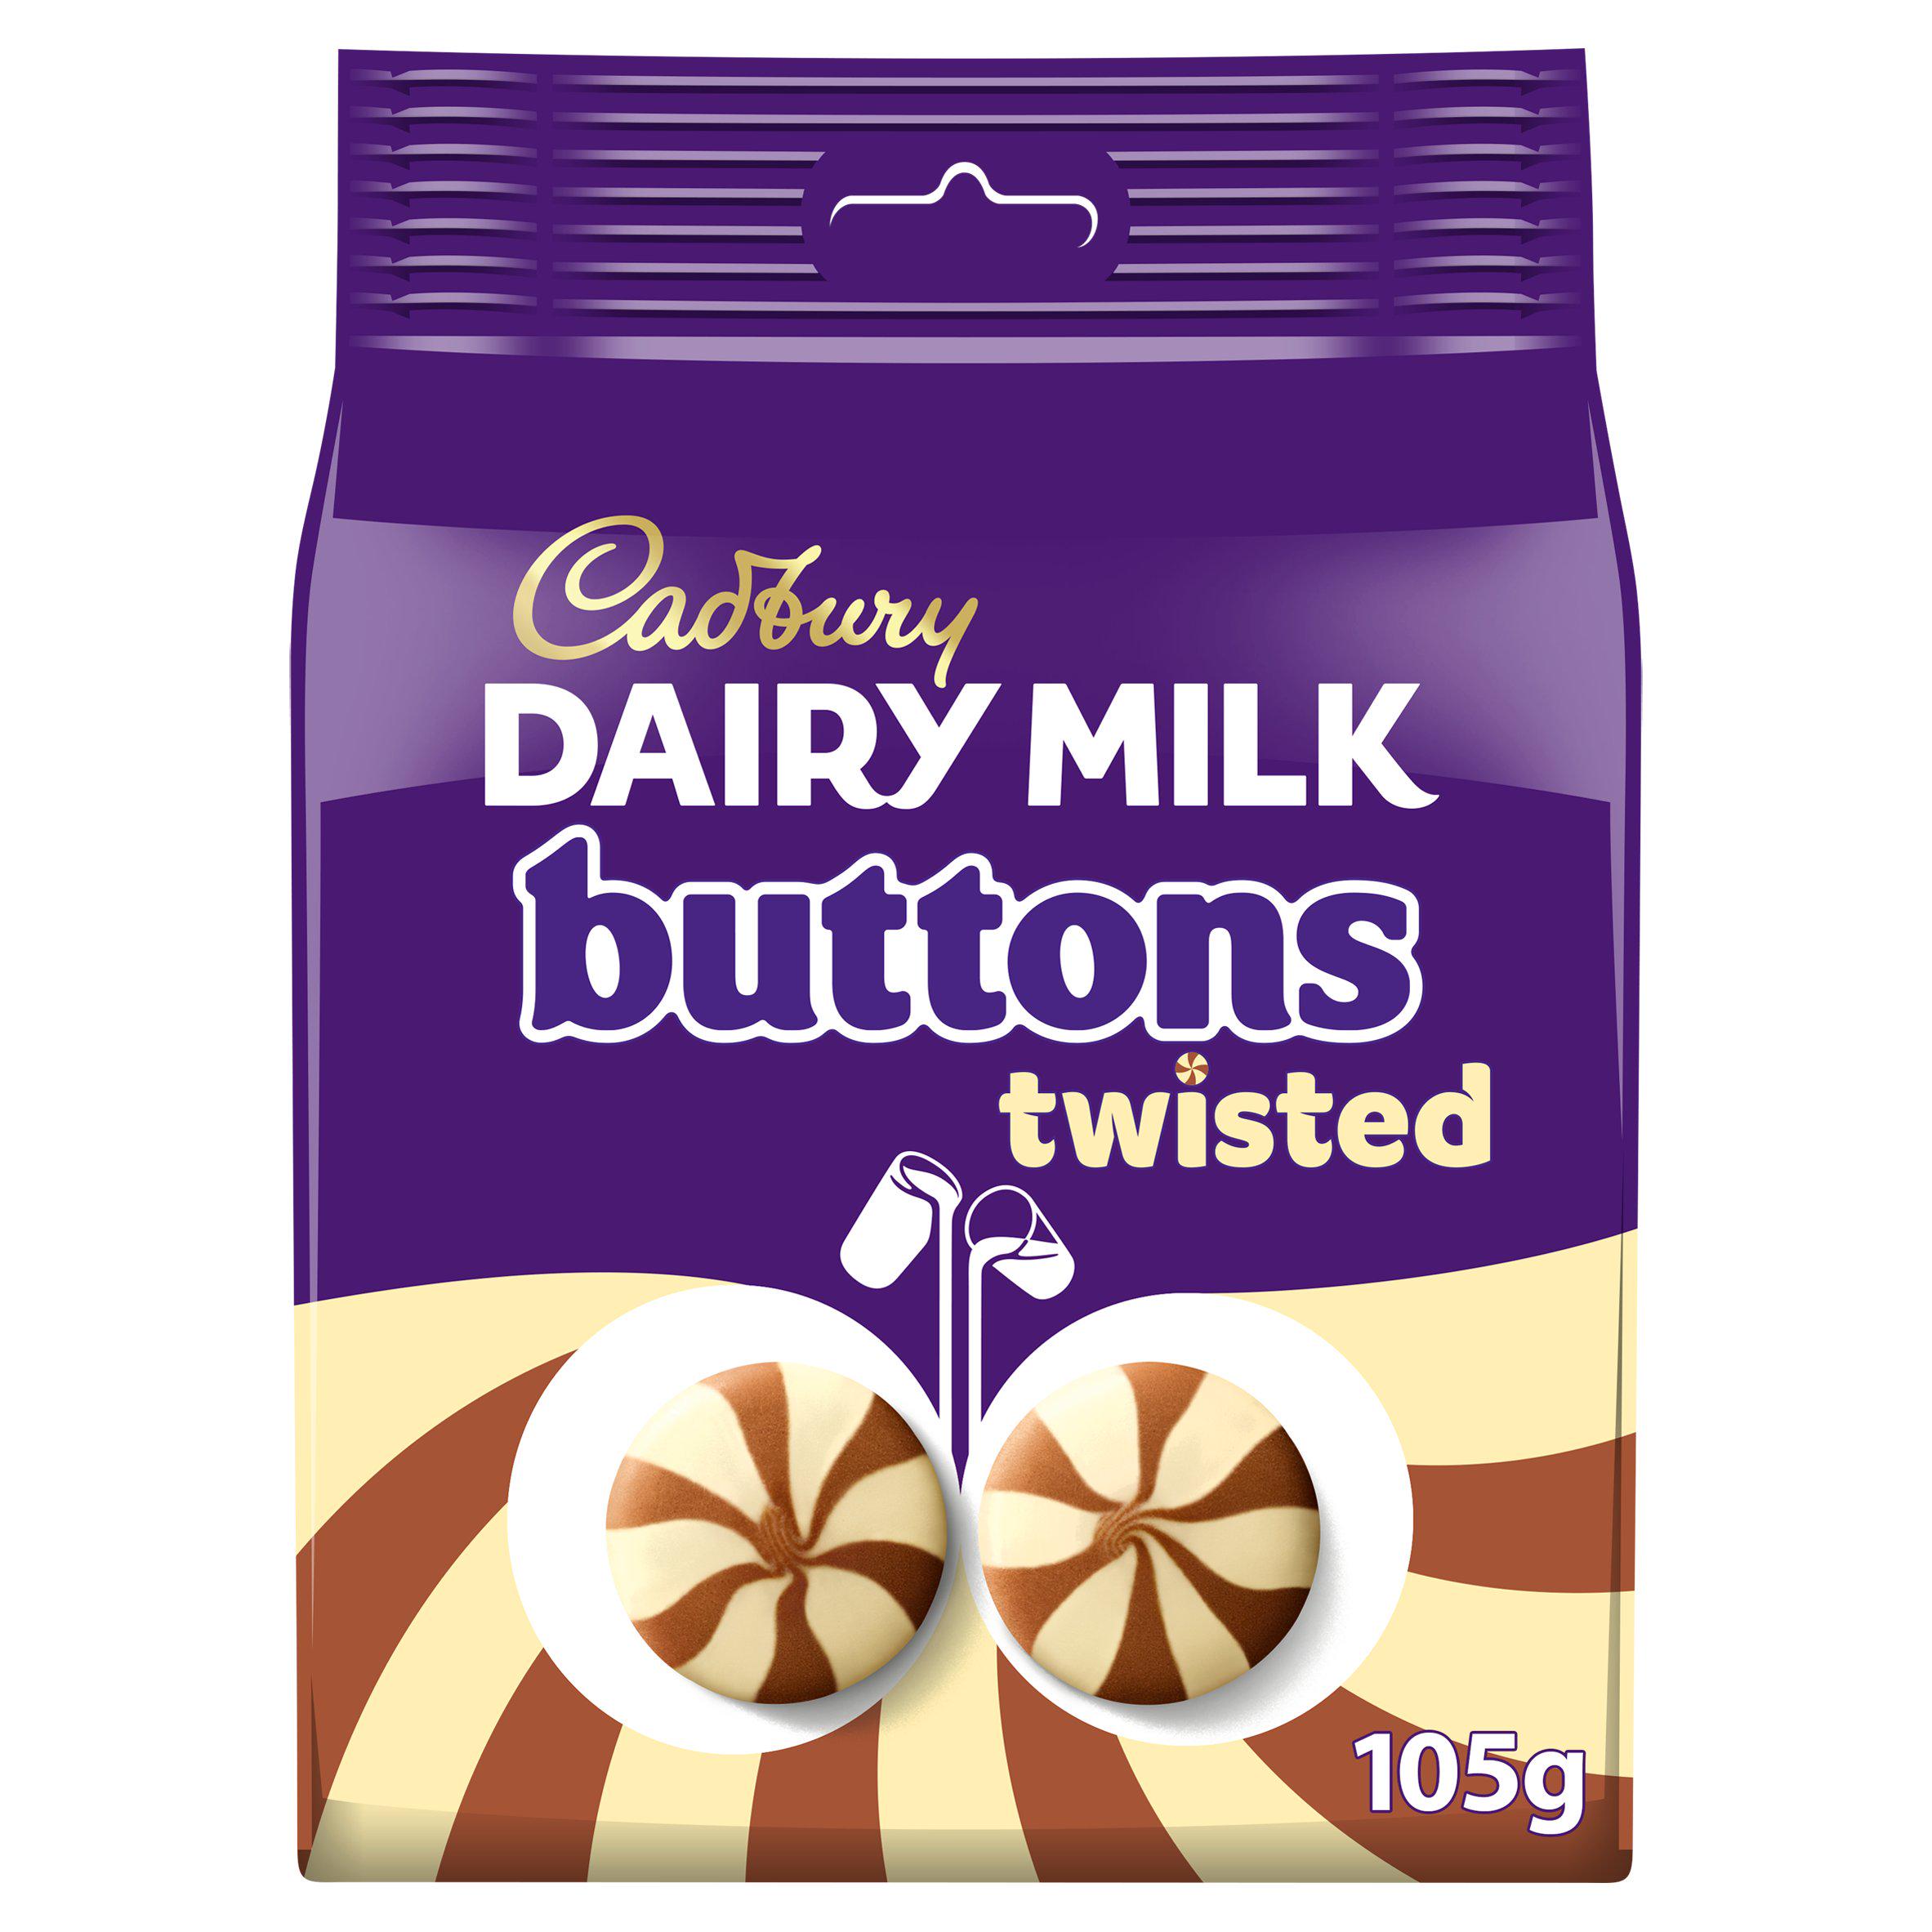 Schnappen Sie sich „Dairy Milk Twisted“-Anstecker für 1,50 £ bei Sainsbury's